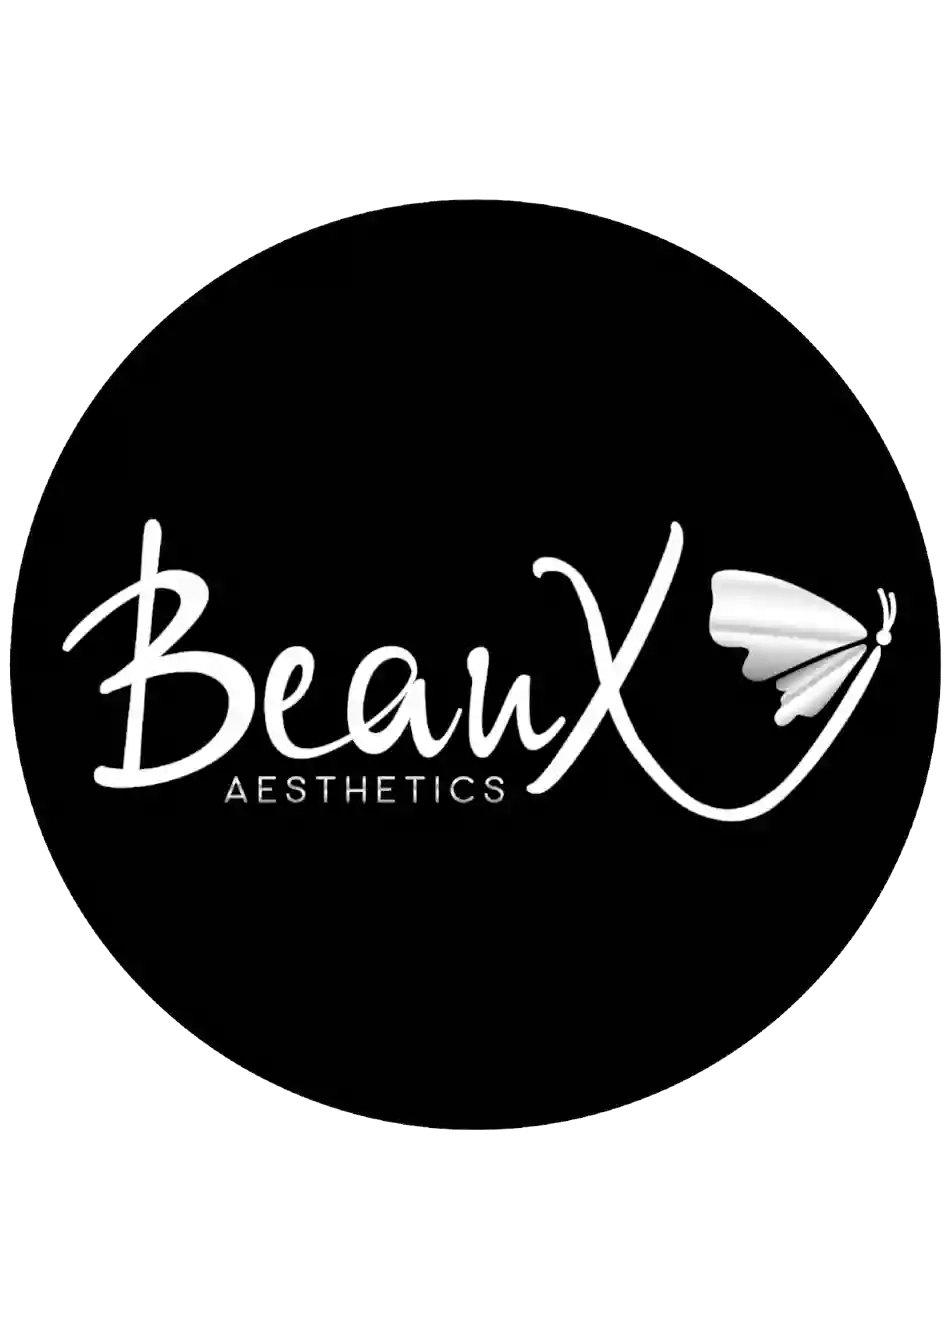 Beaux Aesthetics Ltd